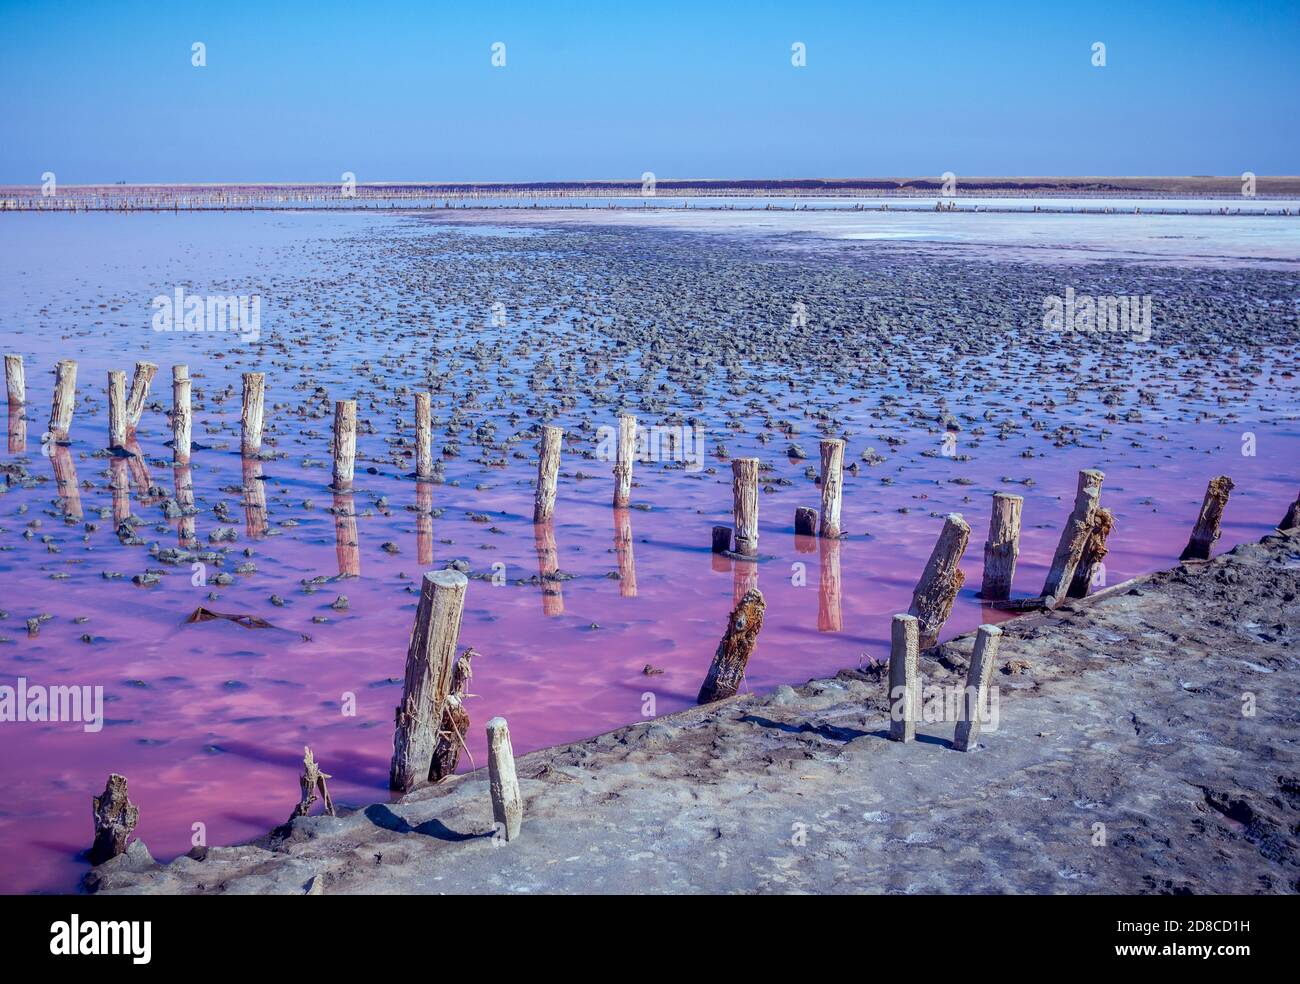 Salz, Salzlake und Schlamm aus rosa salzigen Sywasch See in der Nähe Asowschen Meer, gefärbt von Mikroalgen Dunaliellasalina, Anreicherung des Wassers des Sees durch Beta-Carotin Stockfoto